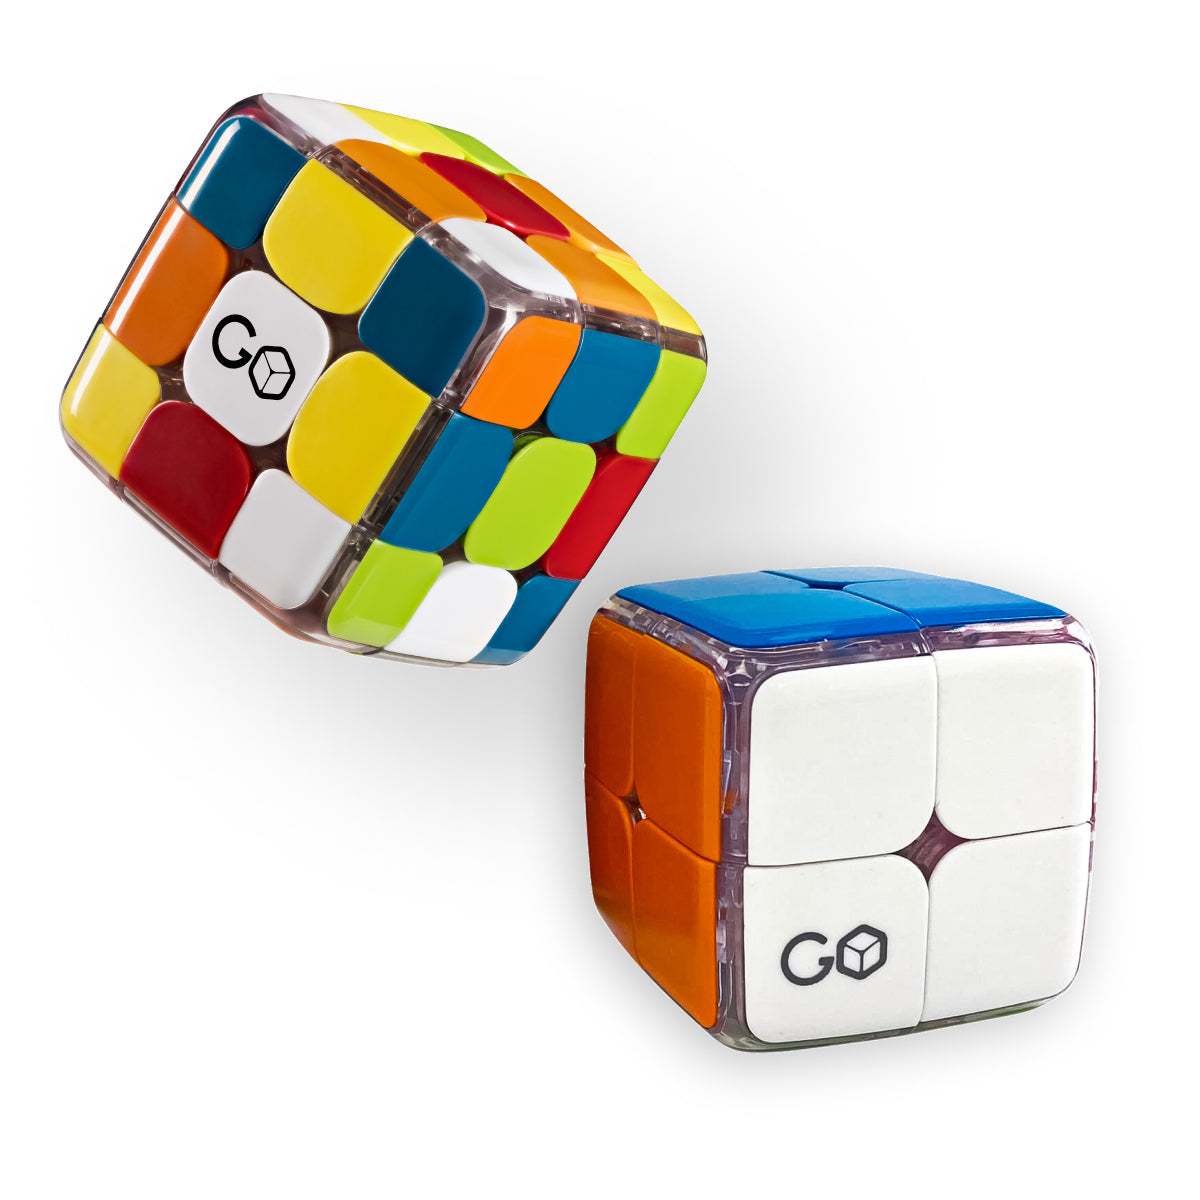 Smart Cubes - GoCube bundle pack